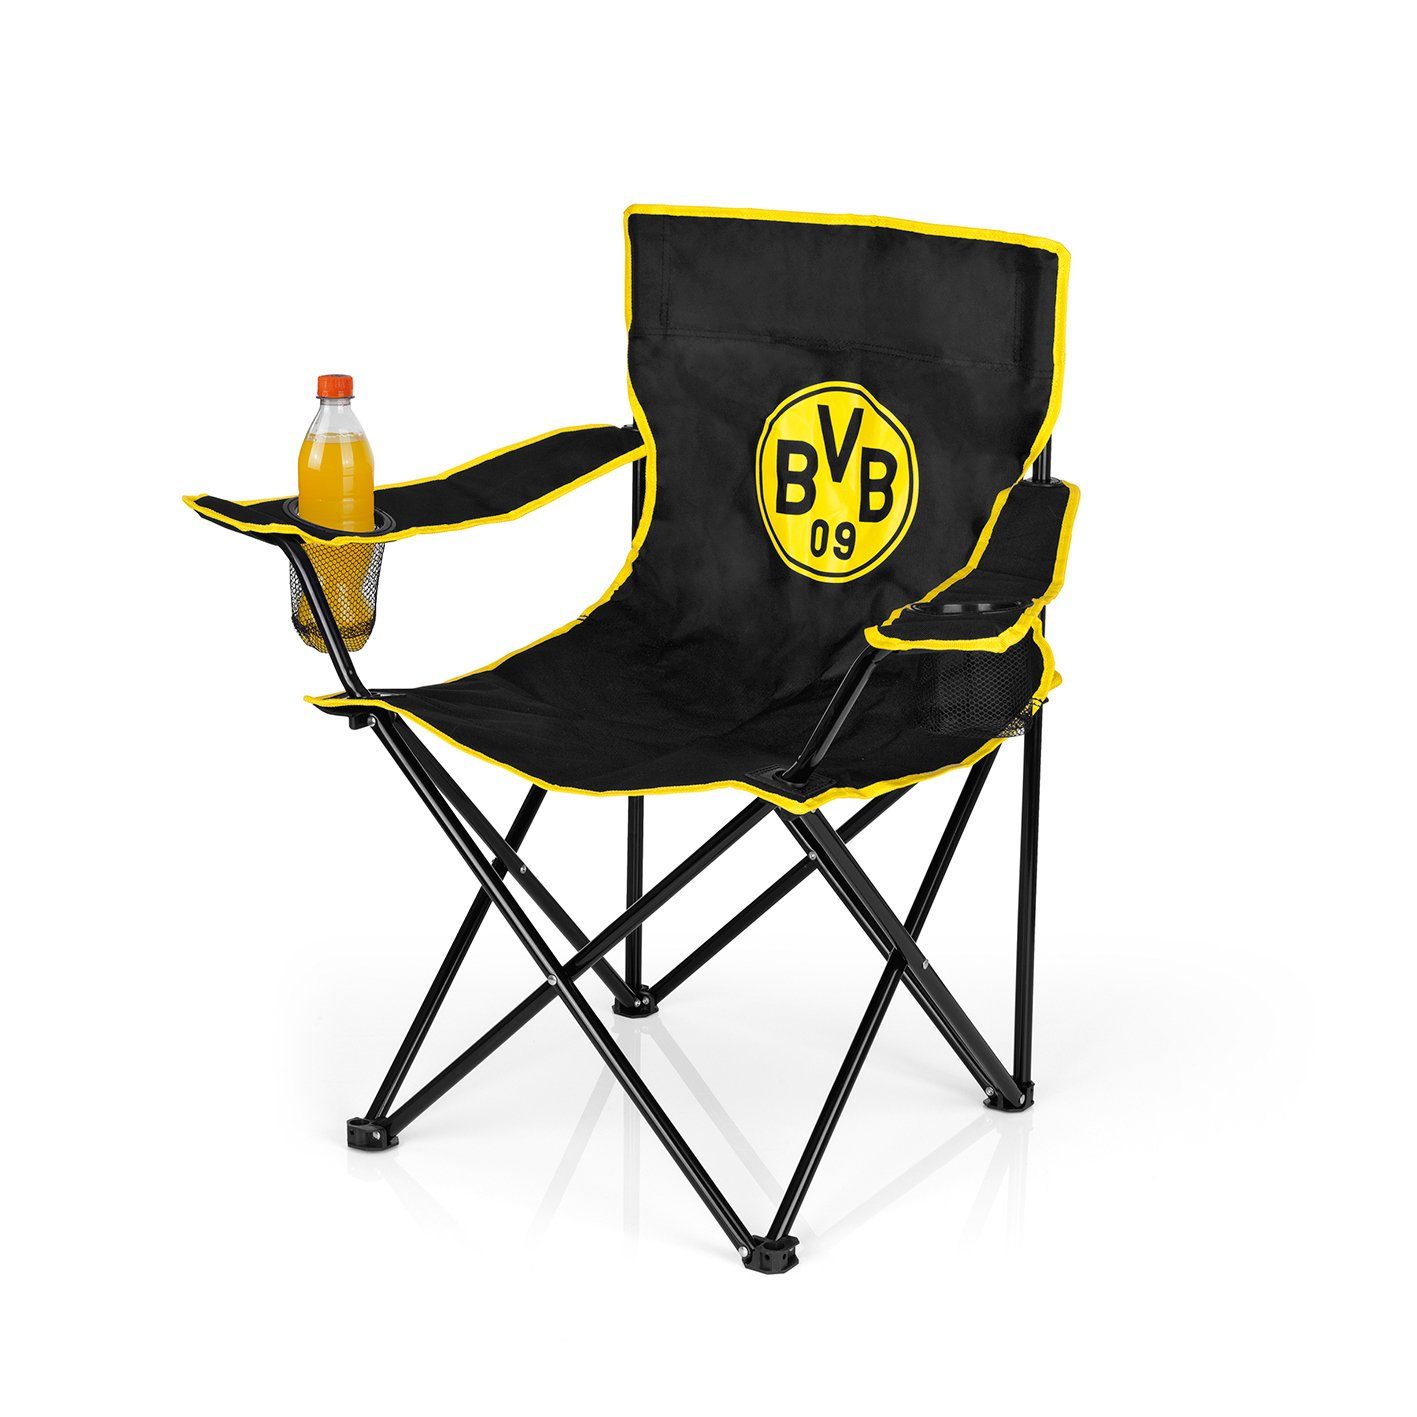 BVB Campingstuhl, faltbar mit BVB-Logo, Zusammenfaltbarer Campingstuhl mit  2 Getränkehaltern online kaufen | OTTO